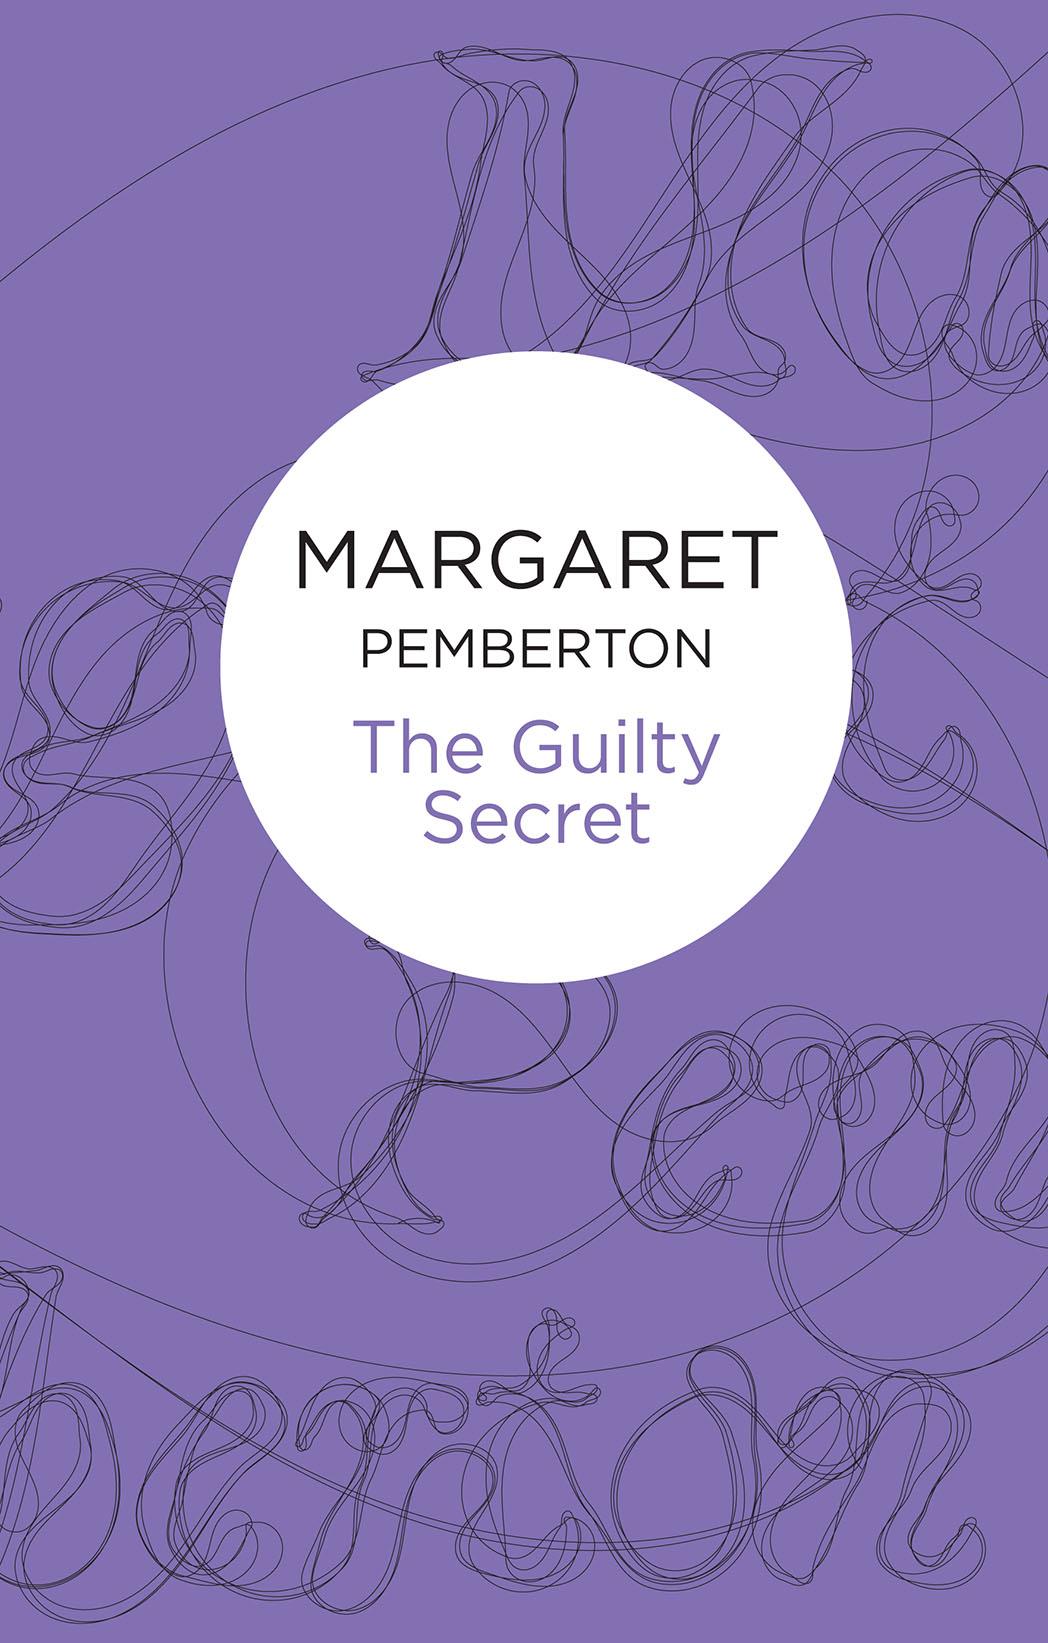 The Guilty Secret by Margaret Pemberton